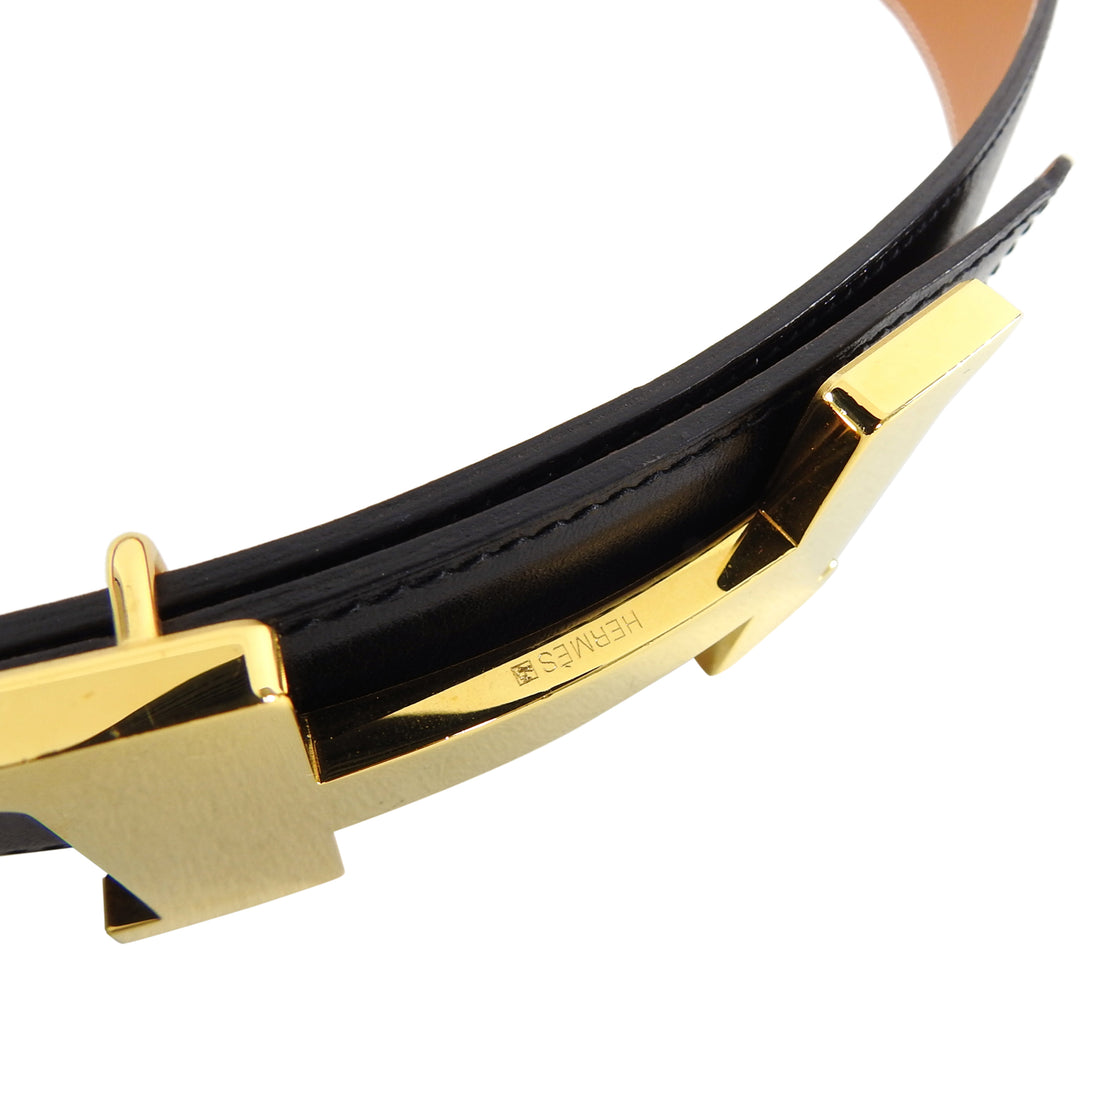 Hermes Black Leather Gold Constance H Belt Kit - 85 / 32